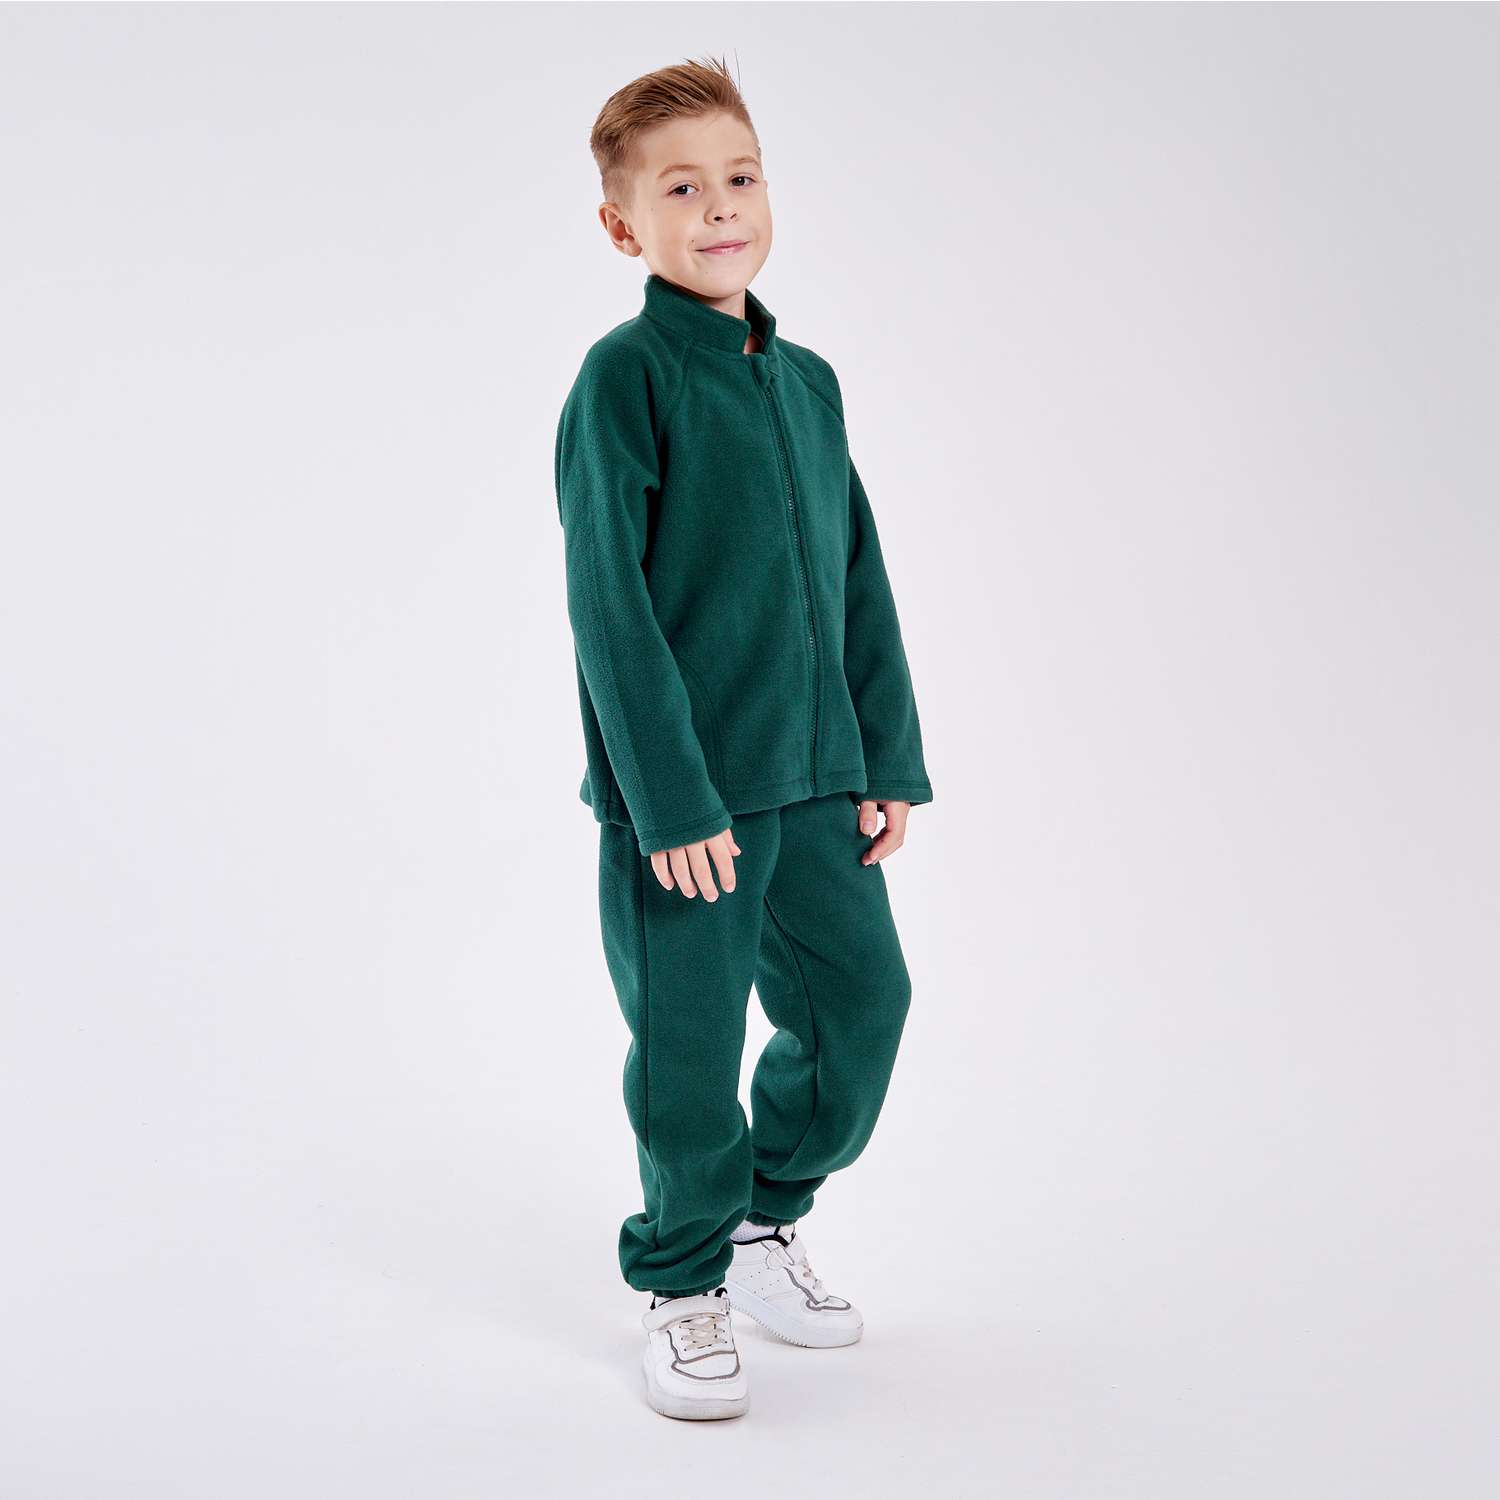 Костюм CHILDREAM костюм флисовый поддева зеленый - фото 1